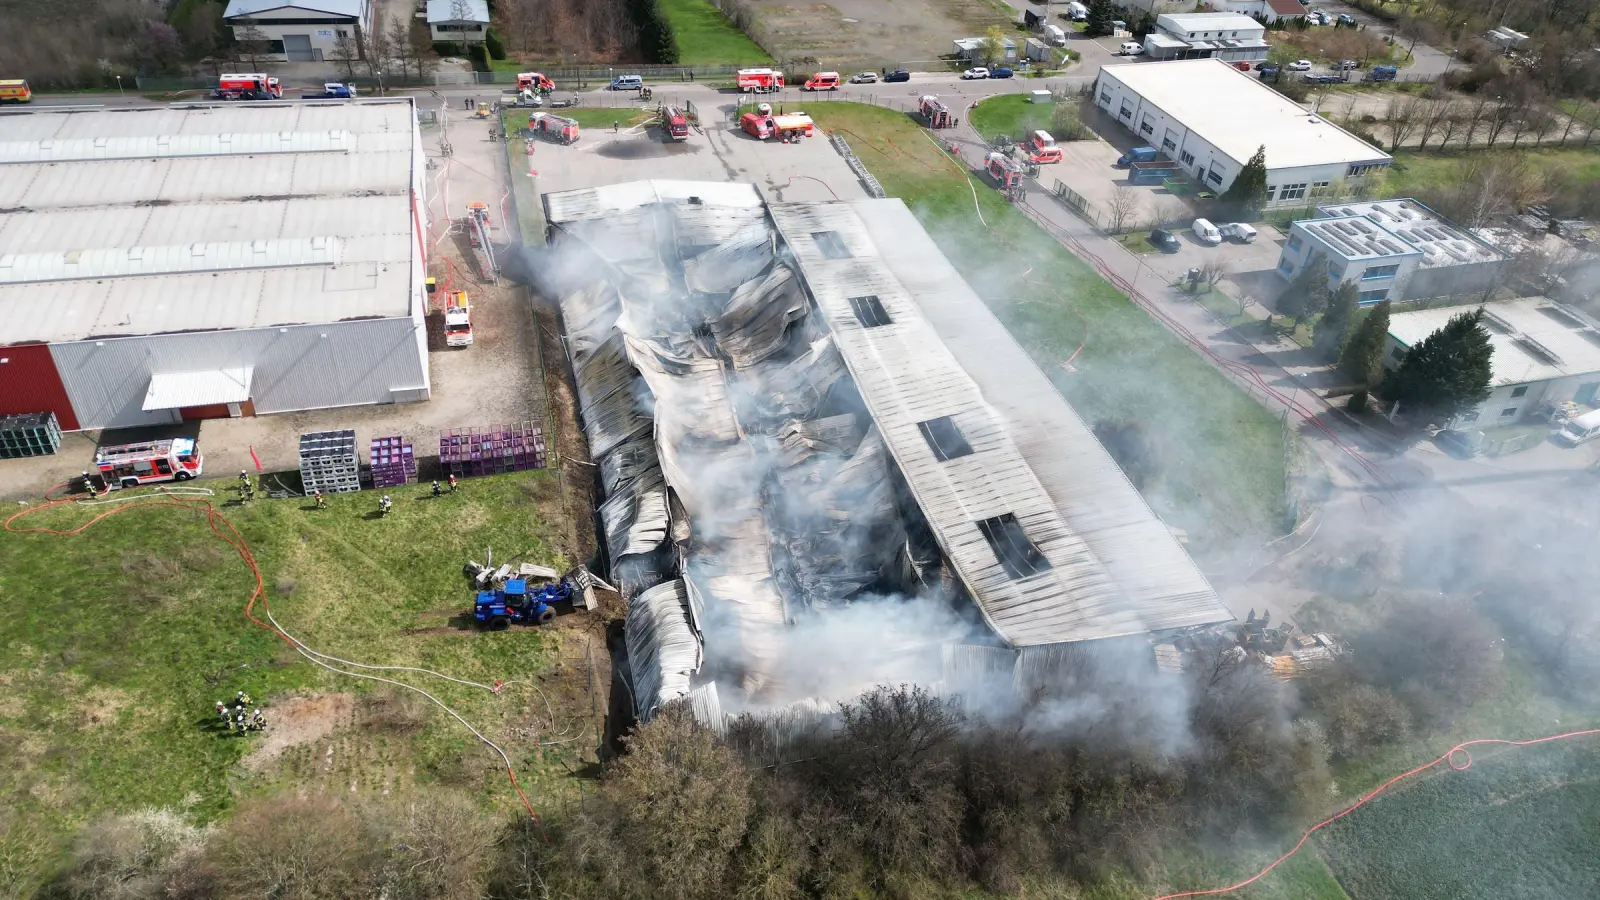 Die Lagerhalle ist komplett ausgebrannt und teilweise eingestürzt. (Foto: taucha-kompakt.de)